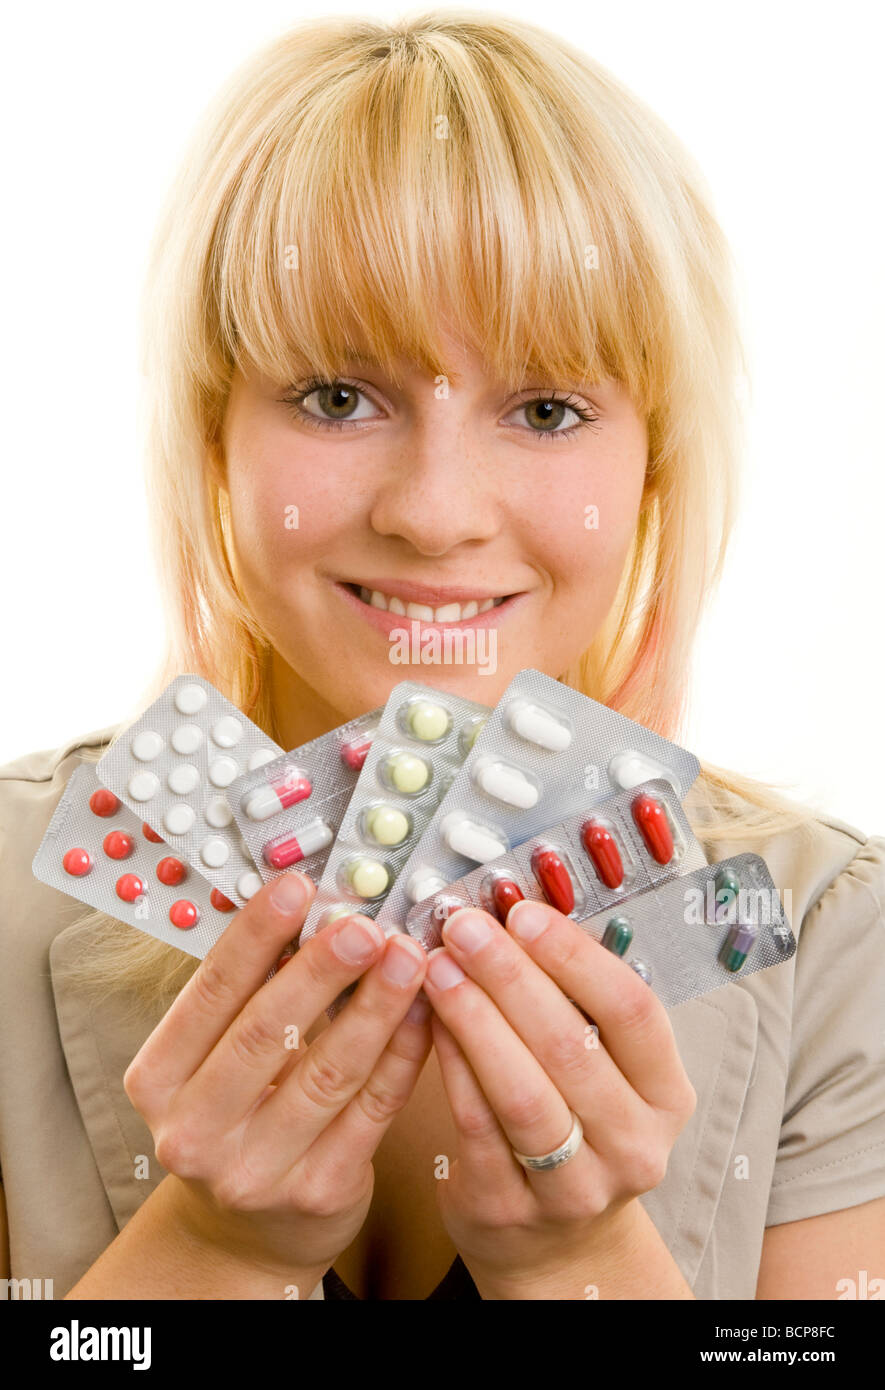 Junge Frau hält lachend verschiedene Medikamente in ihrer Hand Stock Photo